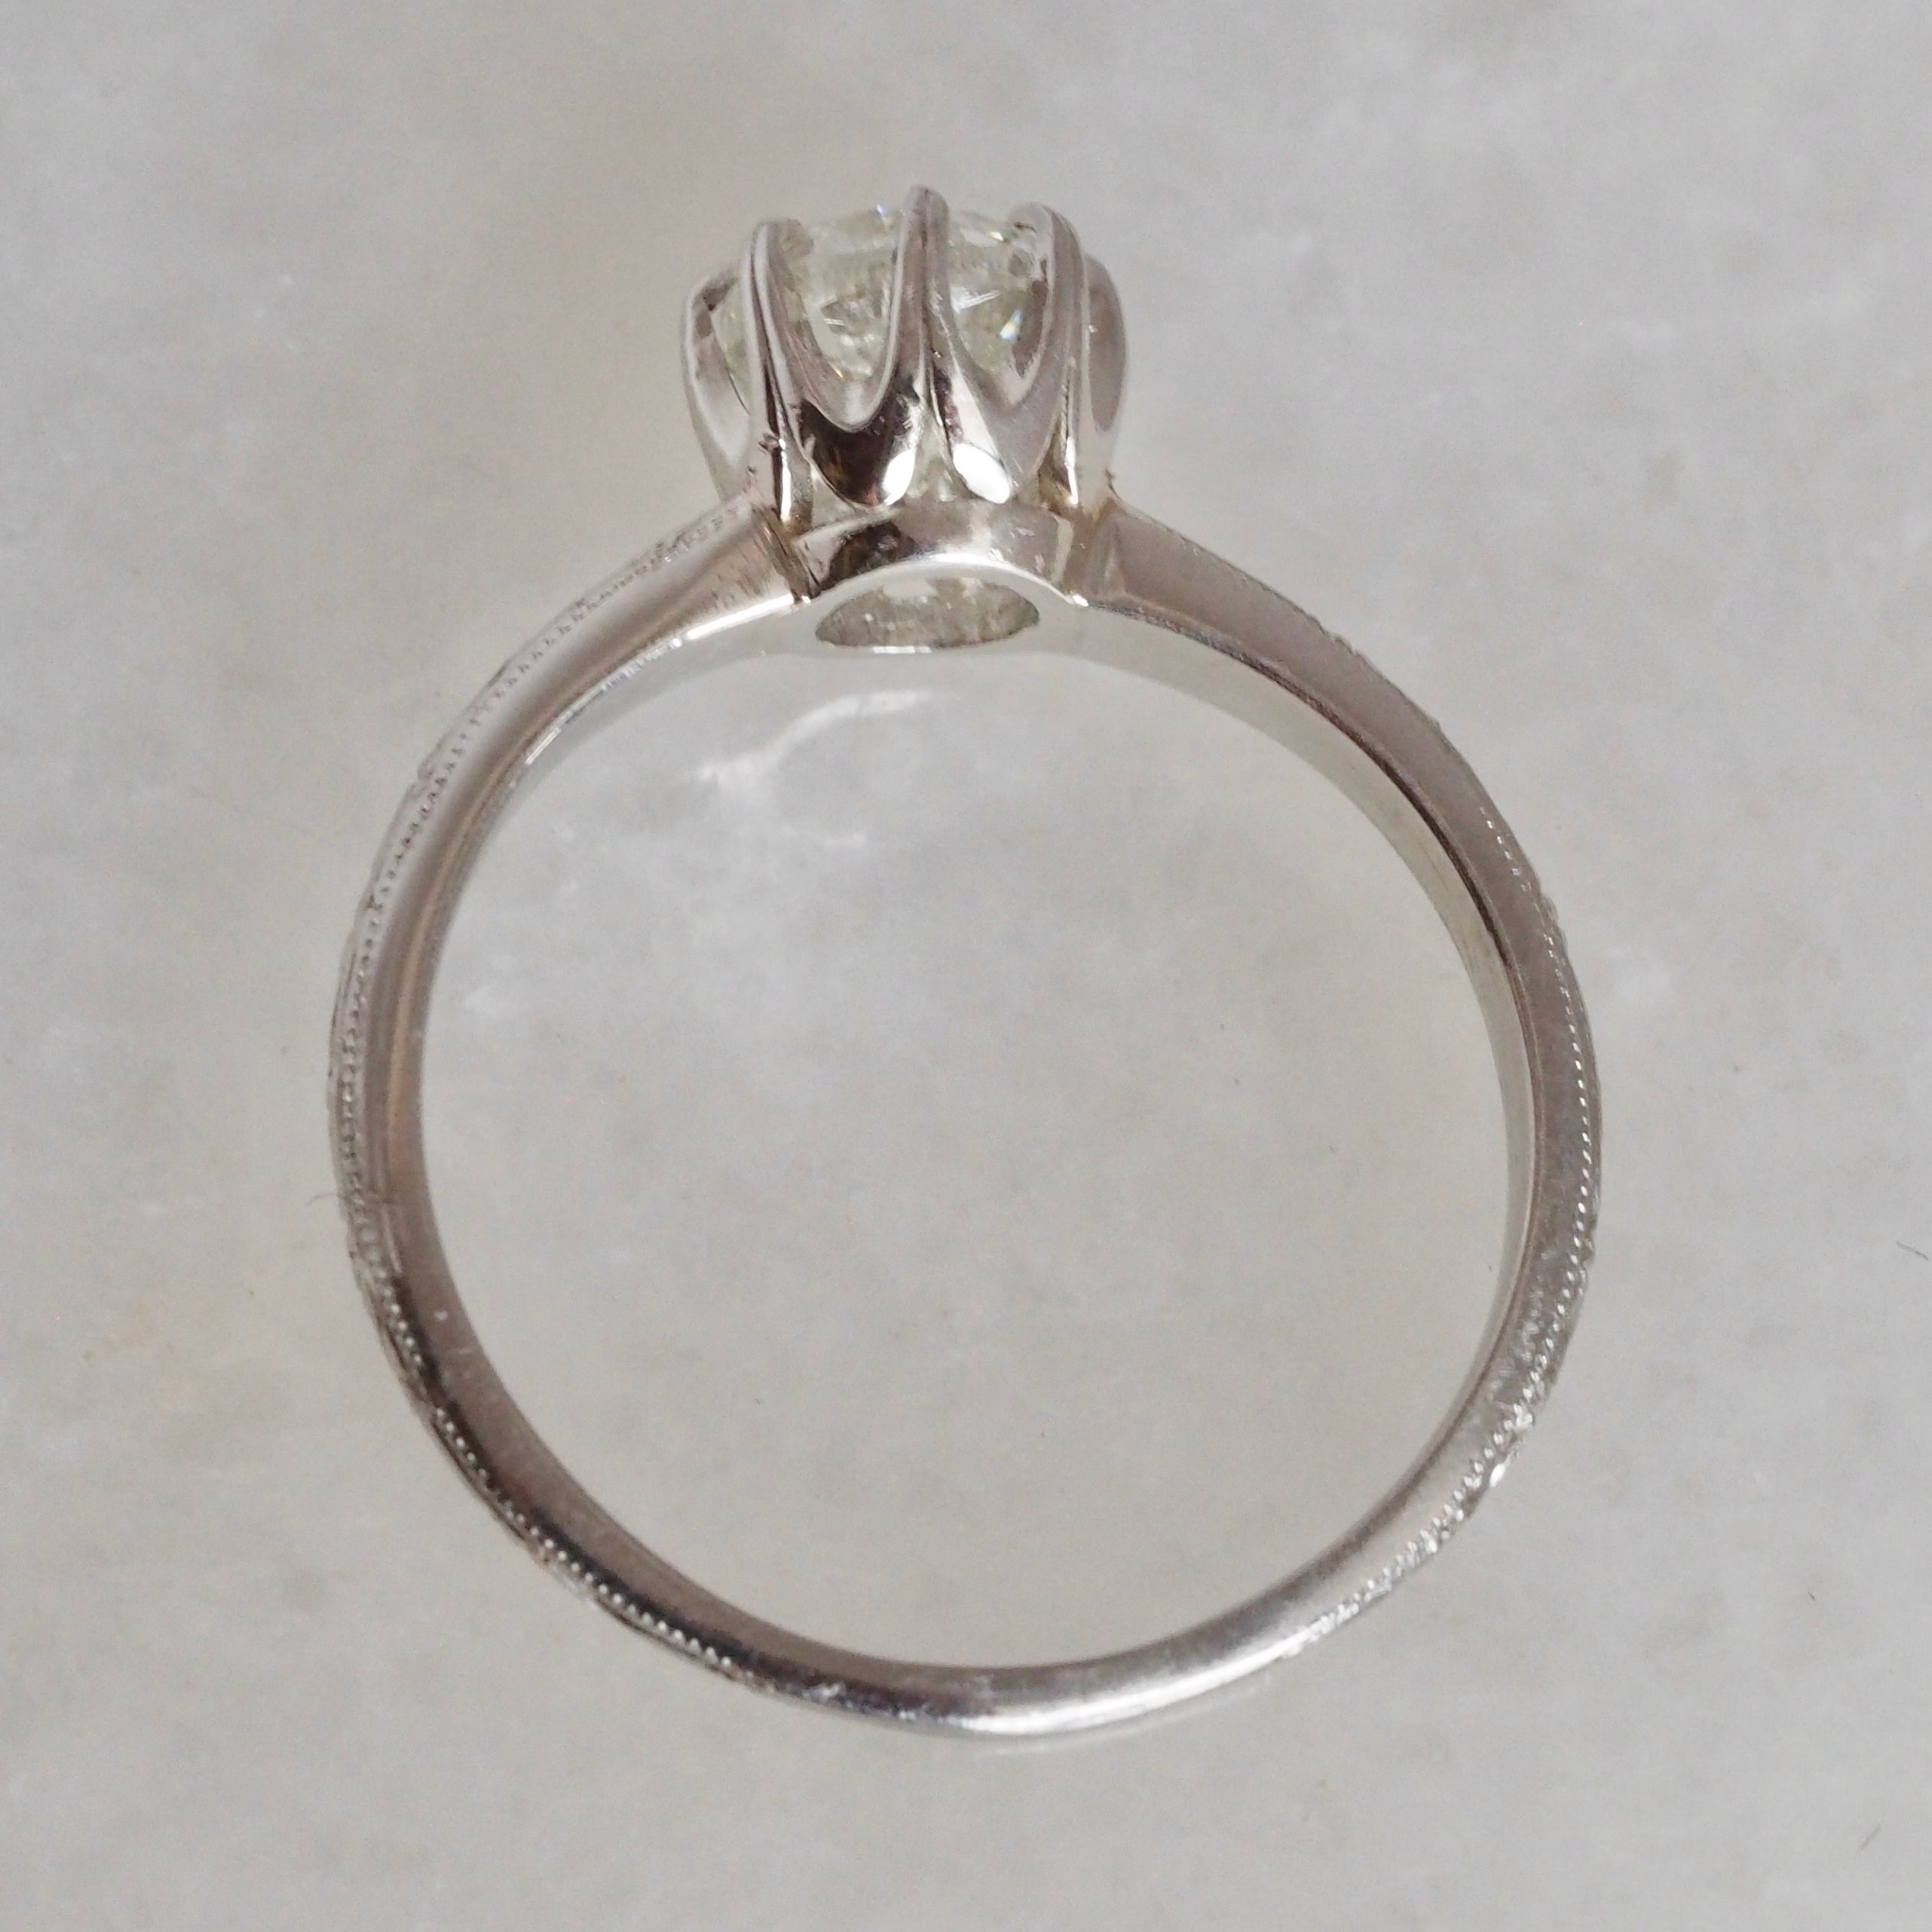 Art Deco Platinum Old European Cut Diamond Engagement Ring